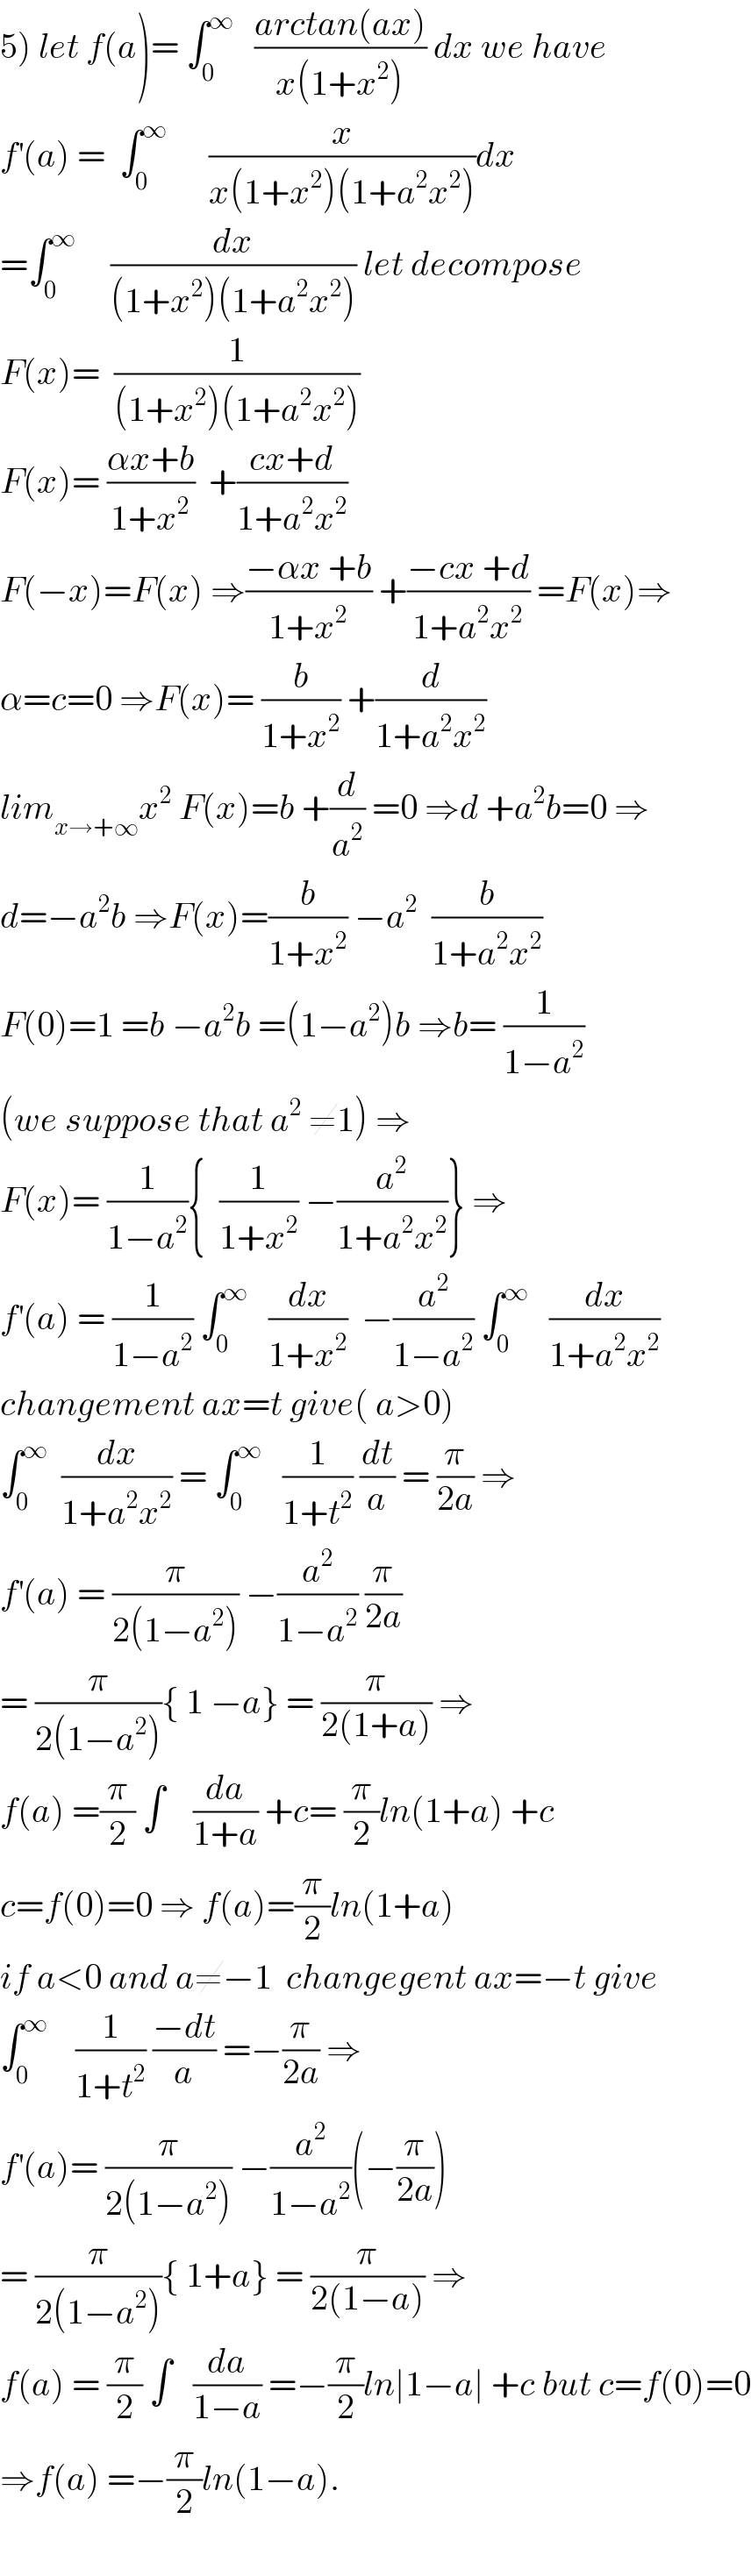 5) let f(a)= ∫_0 ^∞    ((arctan(ax))/(x(1+x^2 ))) dx we have  f^′ (a) =  ∫_0 ^∞       (x/(x(1+x^2 )(1+a^2 x^2 )))dx  =∫_0 ^∞      (dx/((1+x^2 )(1+a^2 x^2 ))) let decompose  F(x)=  (1/((1+x^2 )(1+a^2 x^2 )))  F(x)= ((αx+b)/(1+x^2 ))  +((cx+d)/(1+a^2 x^2 ))  F(−x)=F(x) ⇒((−αx +b)/(1+x^2 )) +((−cx +d)/(1+a^2 x^2 )) =F(x)⇒  α=c=0 ⇒F(x)= (b/(1+x^2 )) +(d/(1+a^2 x^2 ))  lim_(x→+∞) x^2  F(x)=b +(d/a^2 ) =0 ⇒d +a^2 b=0 ⇒  d=−a^2 b ⇒F(x)=(b/(1+x^2 )) −a^2   (b/(1+a^2 x^2 ))  F(0)=1 =b −a^2 b =(1−a^2 )b ⇒b= (1/(1−a^2 ))  (we suppose that a^2  ≠1) ⇒  F(x)= (1/(1−a^2 )){  (1/(1+x^2 )) −(a^2 /(1+a^2 x^2 ))} ⇒  f^′ (a) = (1/(1−a^2 )) ∫_0 ^∞    (dx/(1+x^2 ))  −(a^2 /(1−a^2 )) ∫_0 ^∞    (dx/(1+a^2 x^2 ))  changement ax=t give( a>0)  ∫_0 ^∞   (dx/(1+a^2 x^2 )) = ∫_0 ^∞    (1/(1+t^2 )) (dt/a) = (π/(2a)) ⇒  f^′ (a) = (π/(2(1−a^2 ))) −(a^2 /(1−a^2 )) (π/(2a))  = (π/(2(1−a^2 ))){ 1 −a} = (π/(2(1+a))) ⇒  f(a) =(π/2) ∫    (da/(1+a)) +c= (π/2)ln(1+a) +c  c=f(0)=0 ⇒ f(a)=(π/2)ln(1+a)  if a<0 and a≠−1  changegent ax=−t give  ∫_0 ^∞     (1/(1+t^2 )) ((−dt)/a) =−(π/(2a)) ⇒  f^′ (a)= (π/(2(1−a^2 ))) −(a^2 /(1−a^2 ))(−(π/(2a)))  = (π/(2(1−a^2 ))){ 1+a} = (π/(2(1−a))) ⇒  f(a) = (π/2) ∫   (da/(1−a)) =−(π/2)ln∣1−a∣ +c but c=f(0)=0  ⇒f(a) =−(π/2)ln(1−a).    